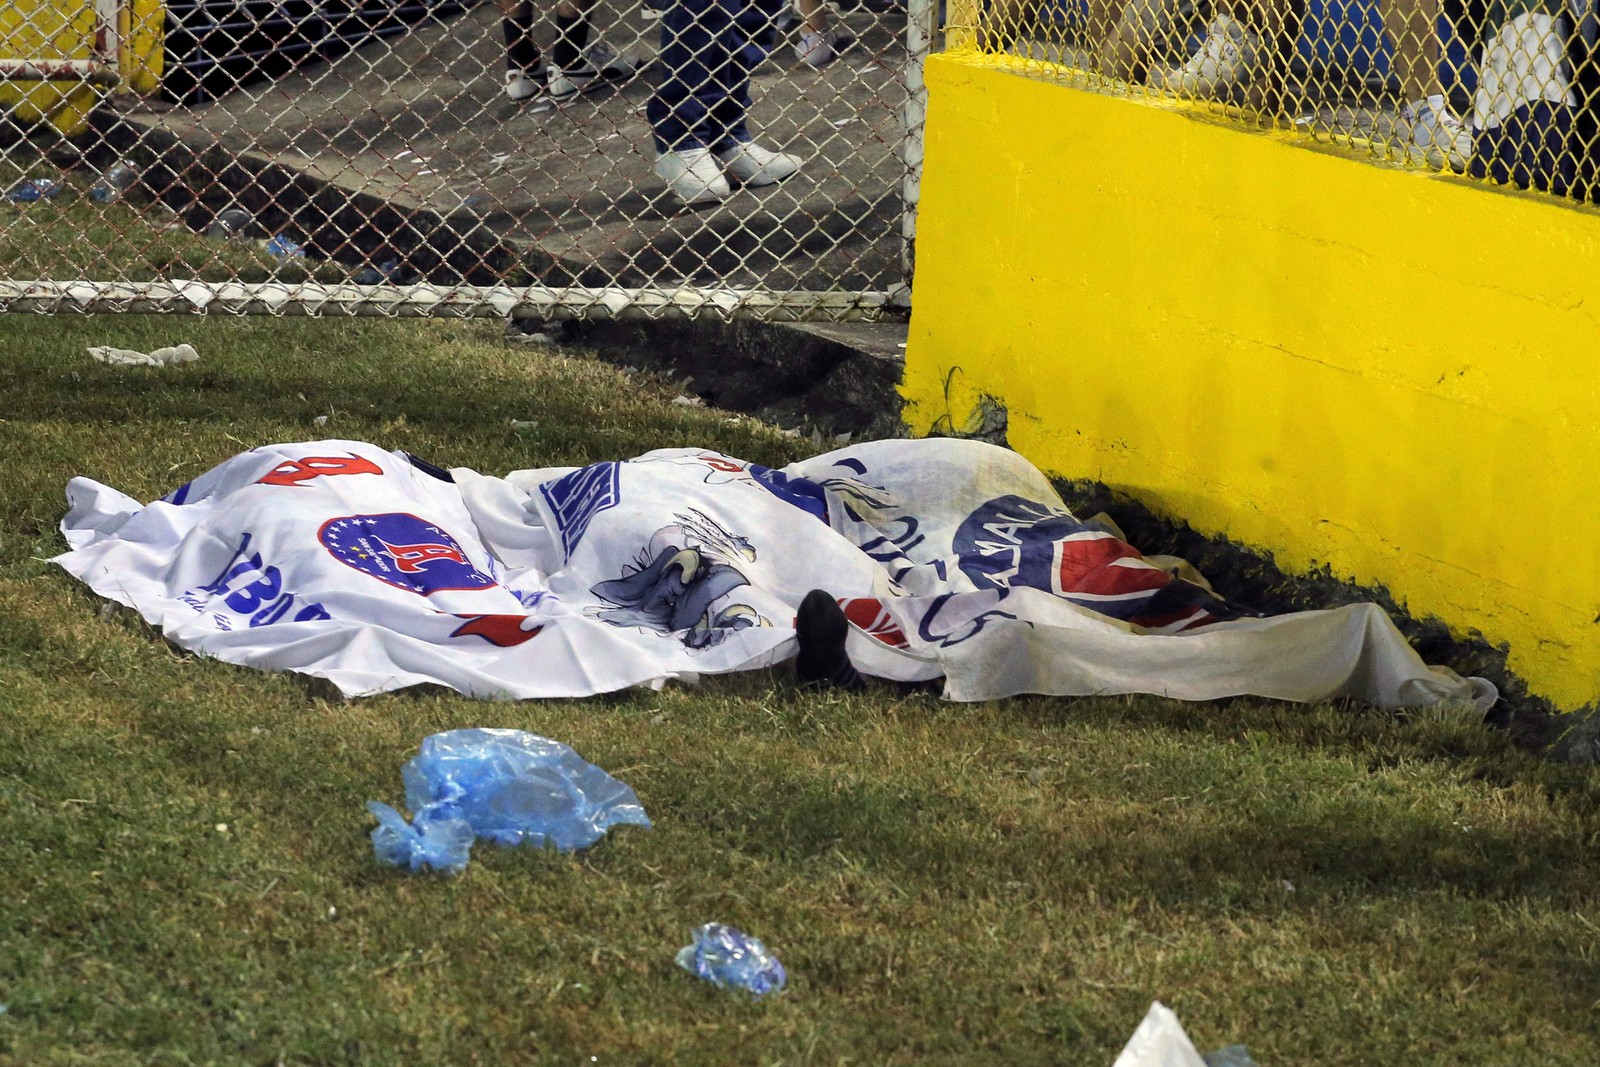 A partida foi suspensa enquanto equipes de emergência retiravam as pessoas do estádio — Foto: Milton Flores / AFP